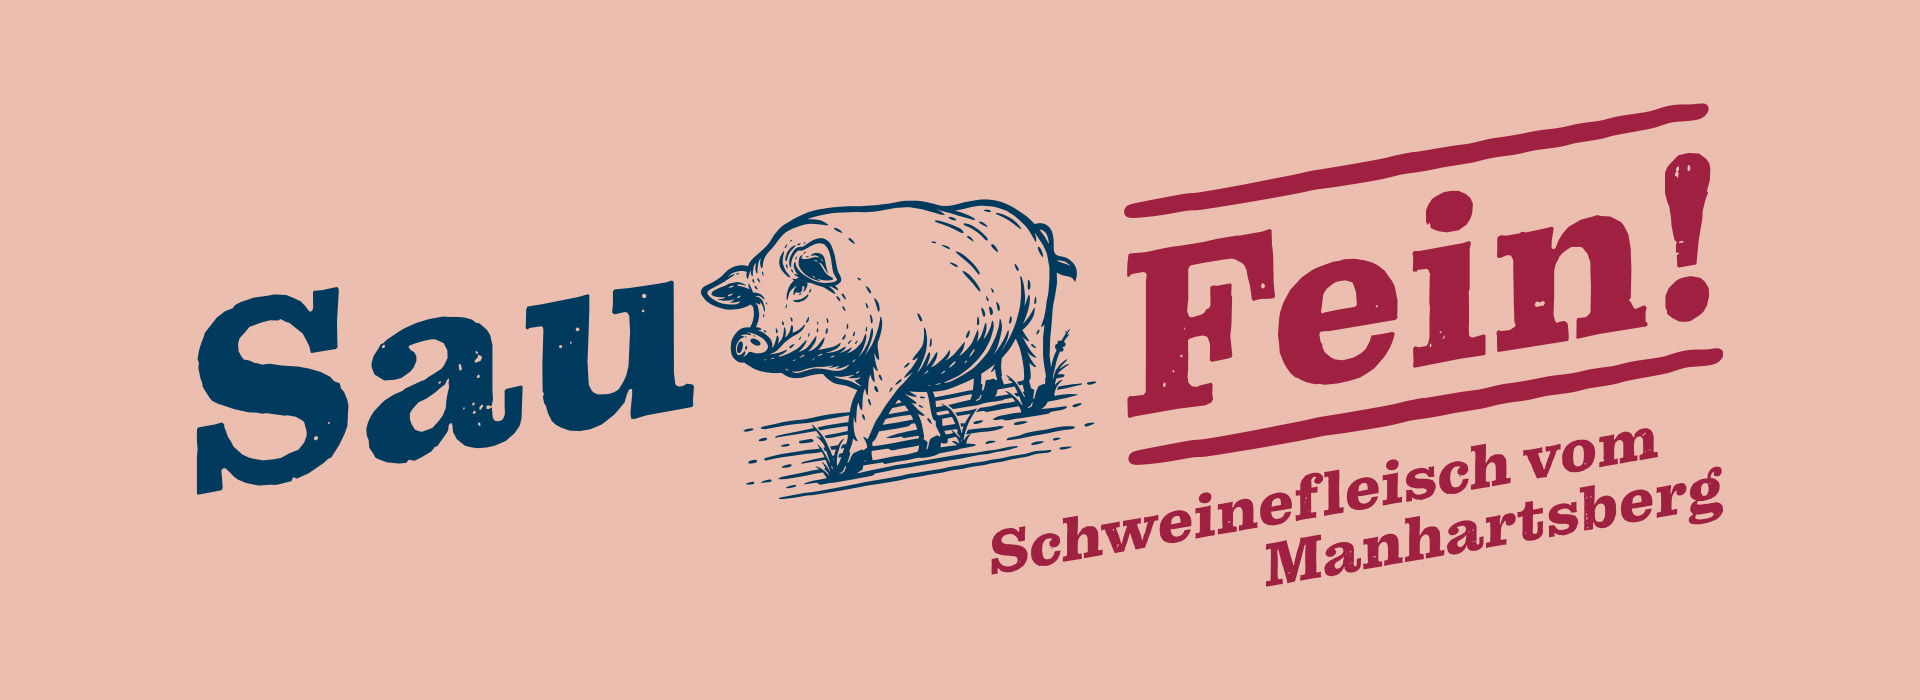 Sau Fein! Schweinefleisch vom Manhartsberg